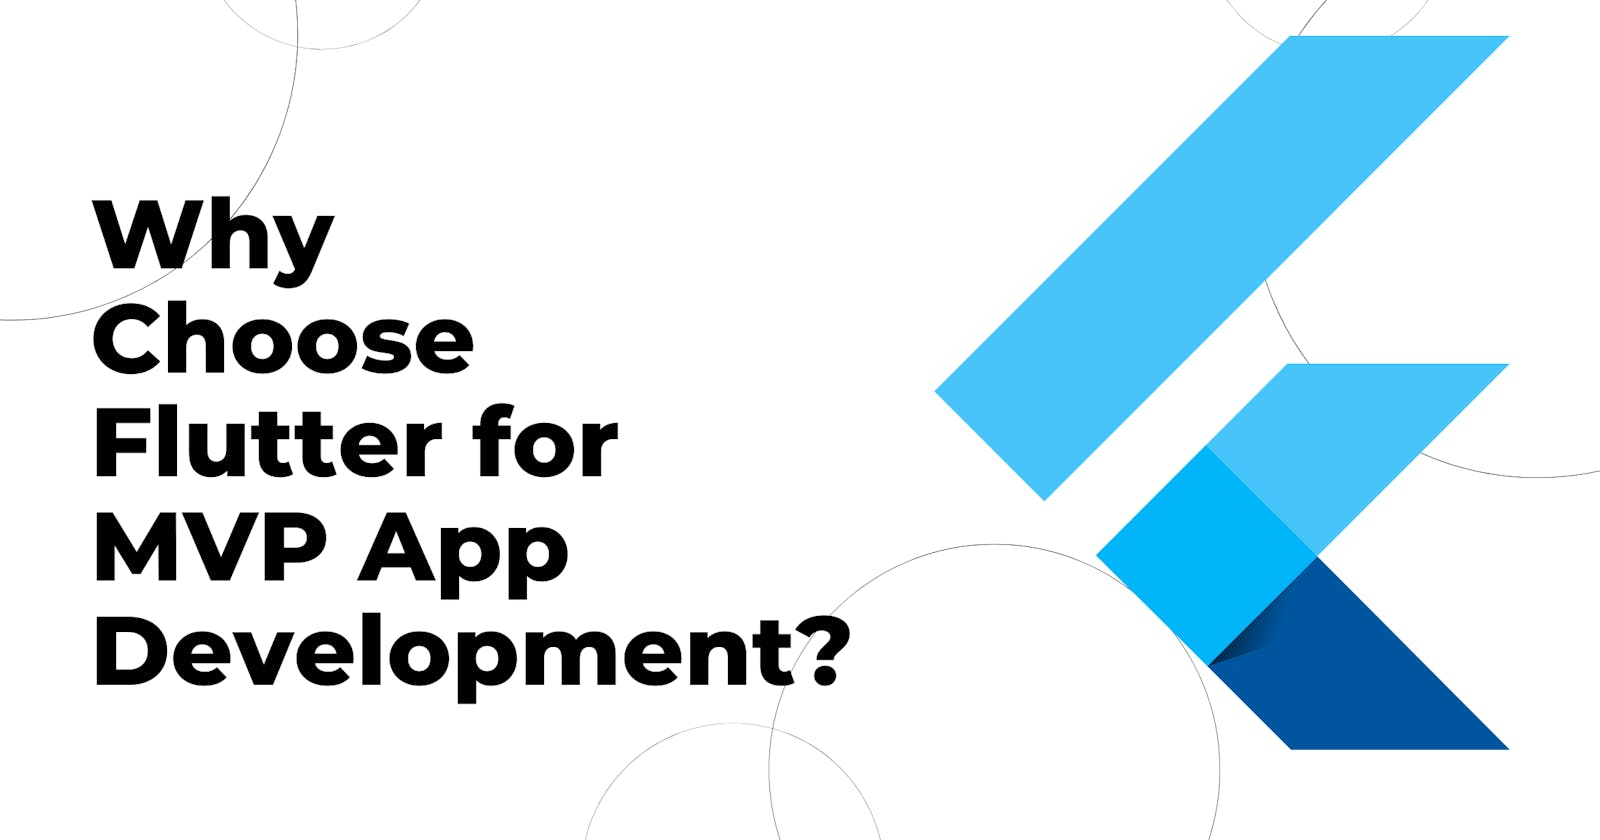 Why Choose Flutter for MVP App Development?